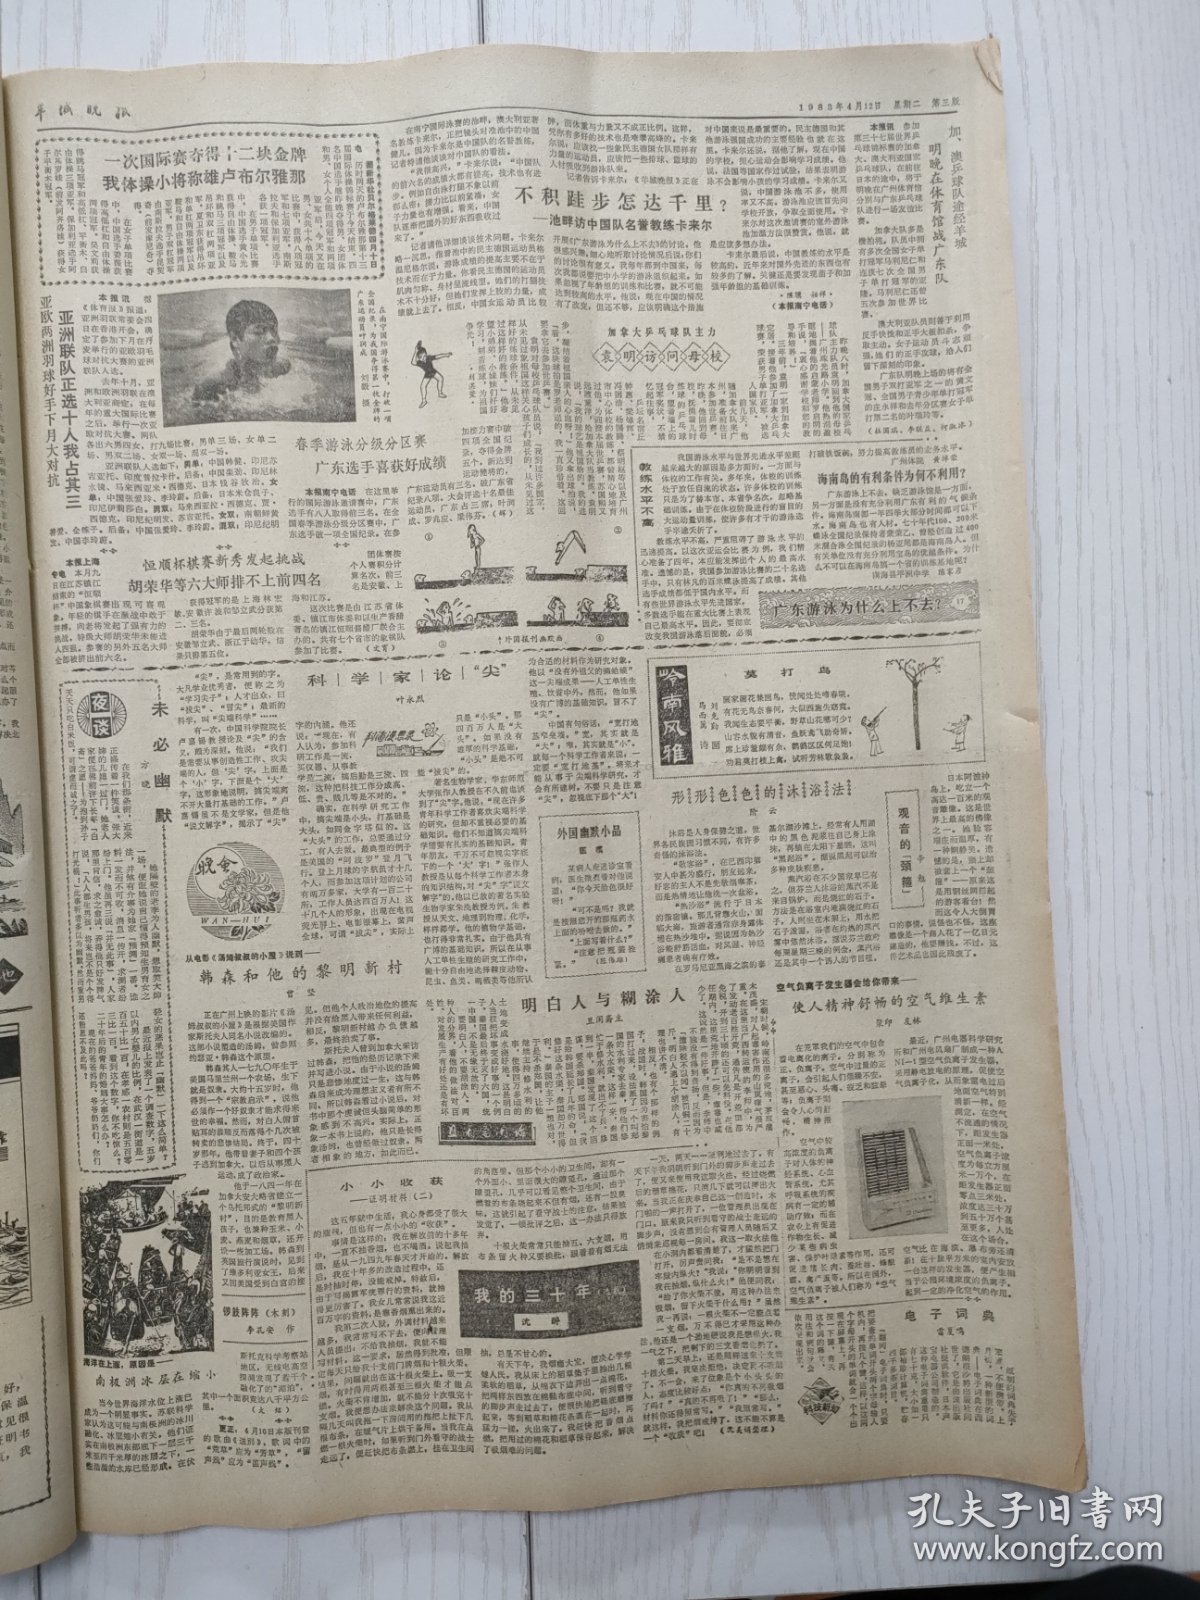 羊城晚报1983年4月12日，杀害安珂的凶手全部落网。成都举办张大千画展。围殴杨威的主犯已被抓获归案。